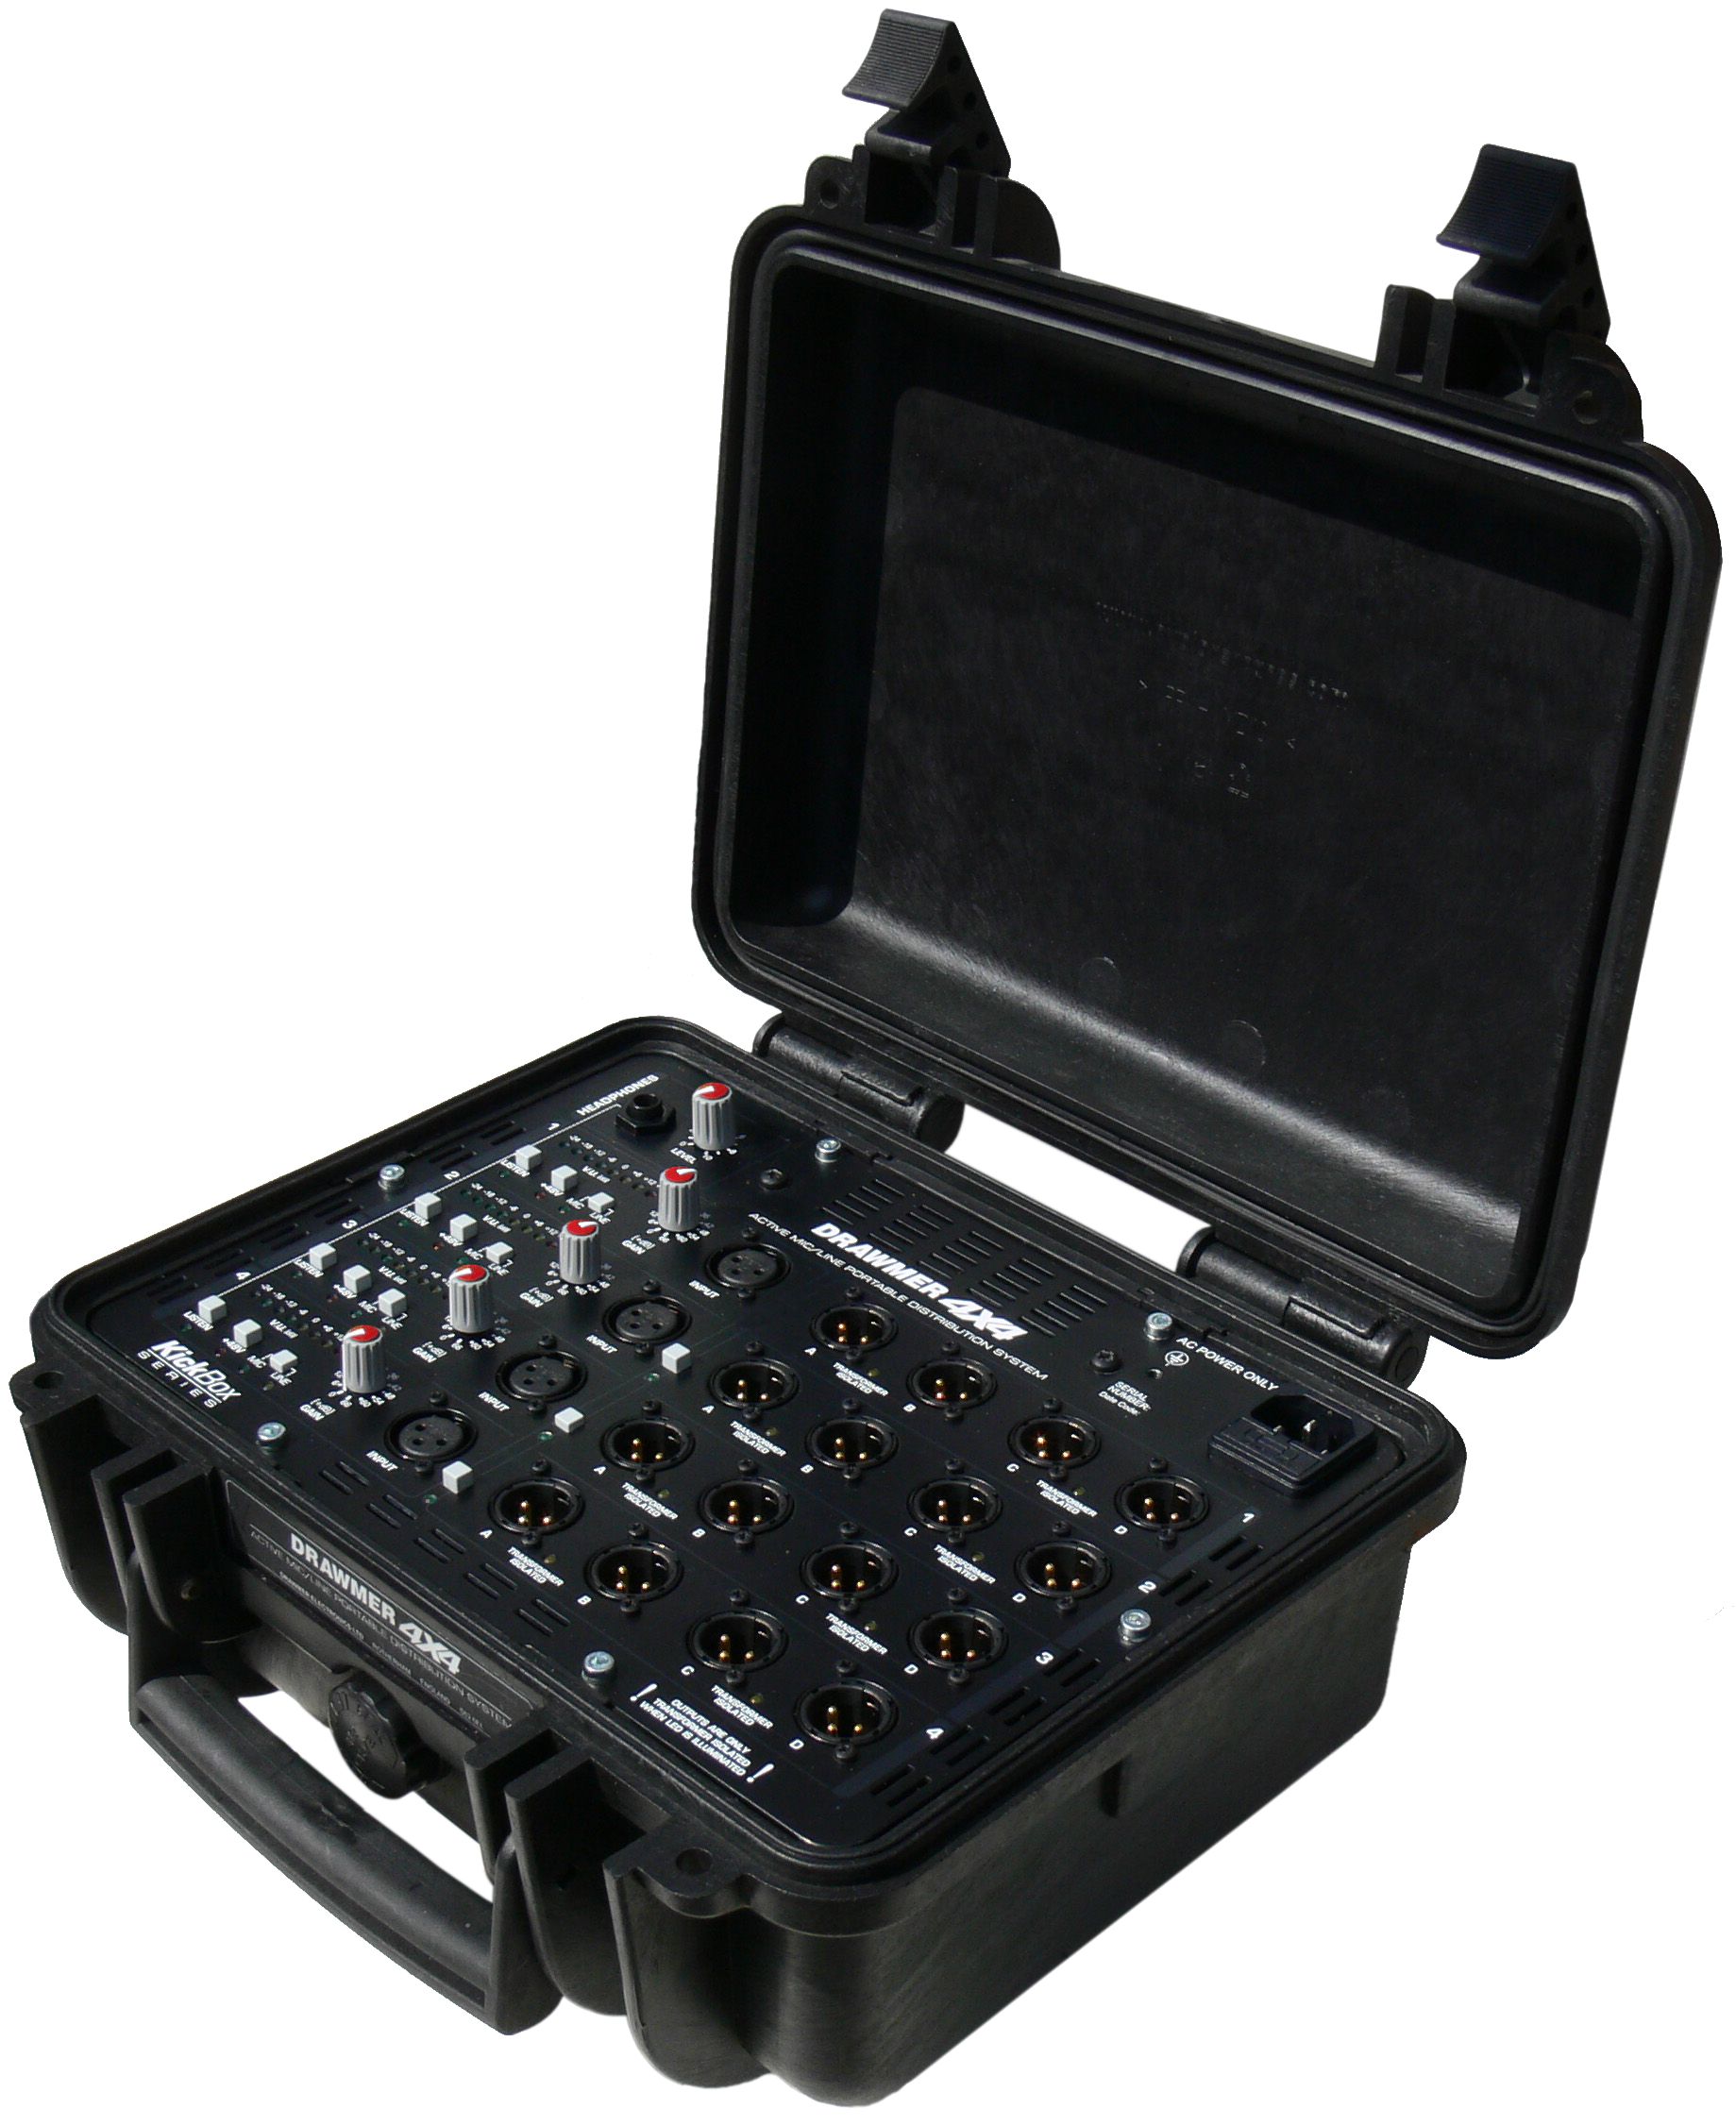 Drawmer KickBox 4x4 - rozdzielacz sygnału do monitoringu 4/4 oraz kostka dziennikarska 1/16 w wersji przenośnej